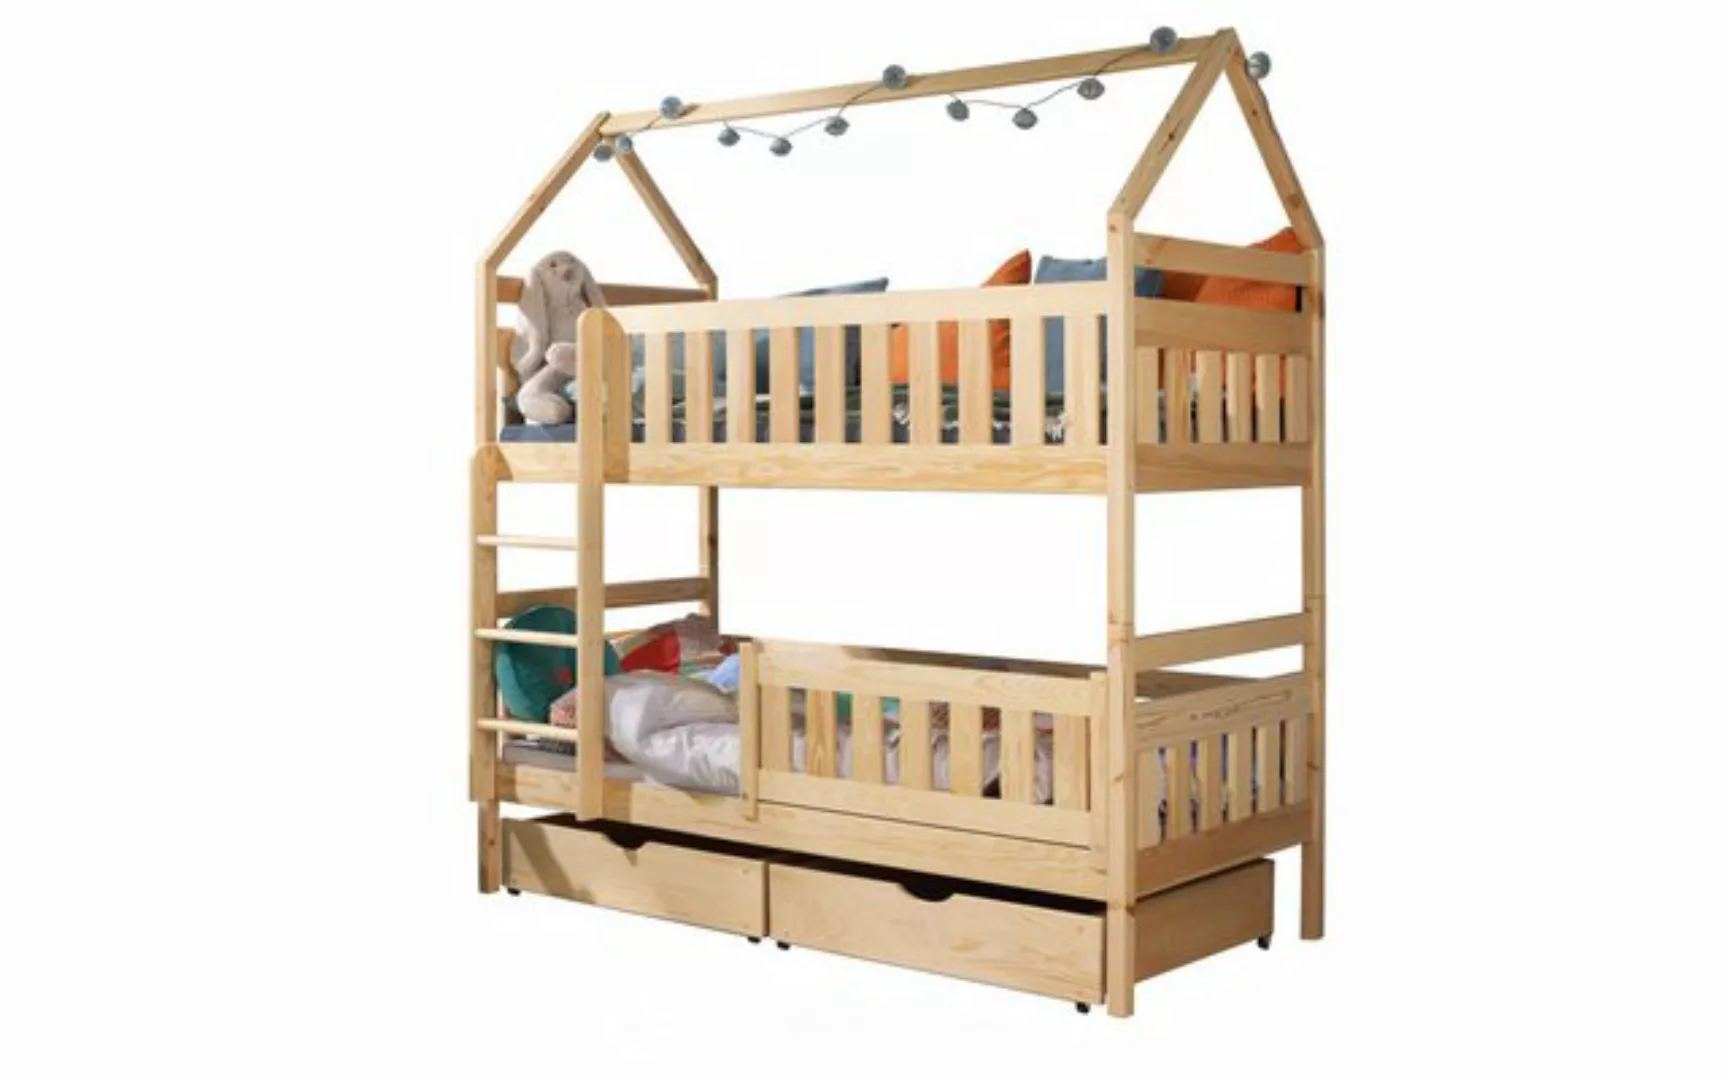 storez24 Hausbett Kinderbett Fiona, Hausbett, mit Überdachung, inkl. Holzle günstig online kaufen